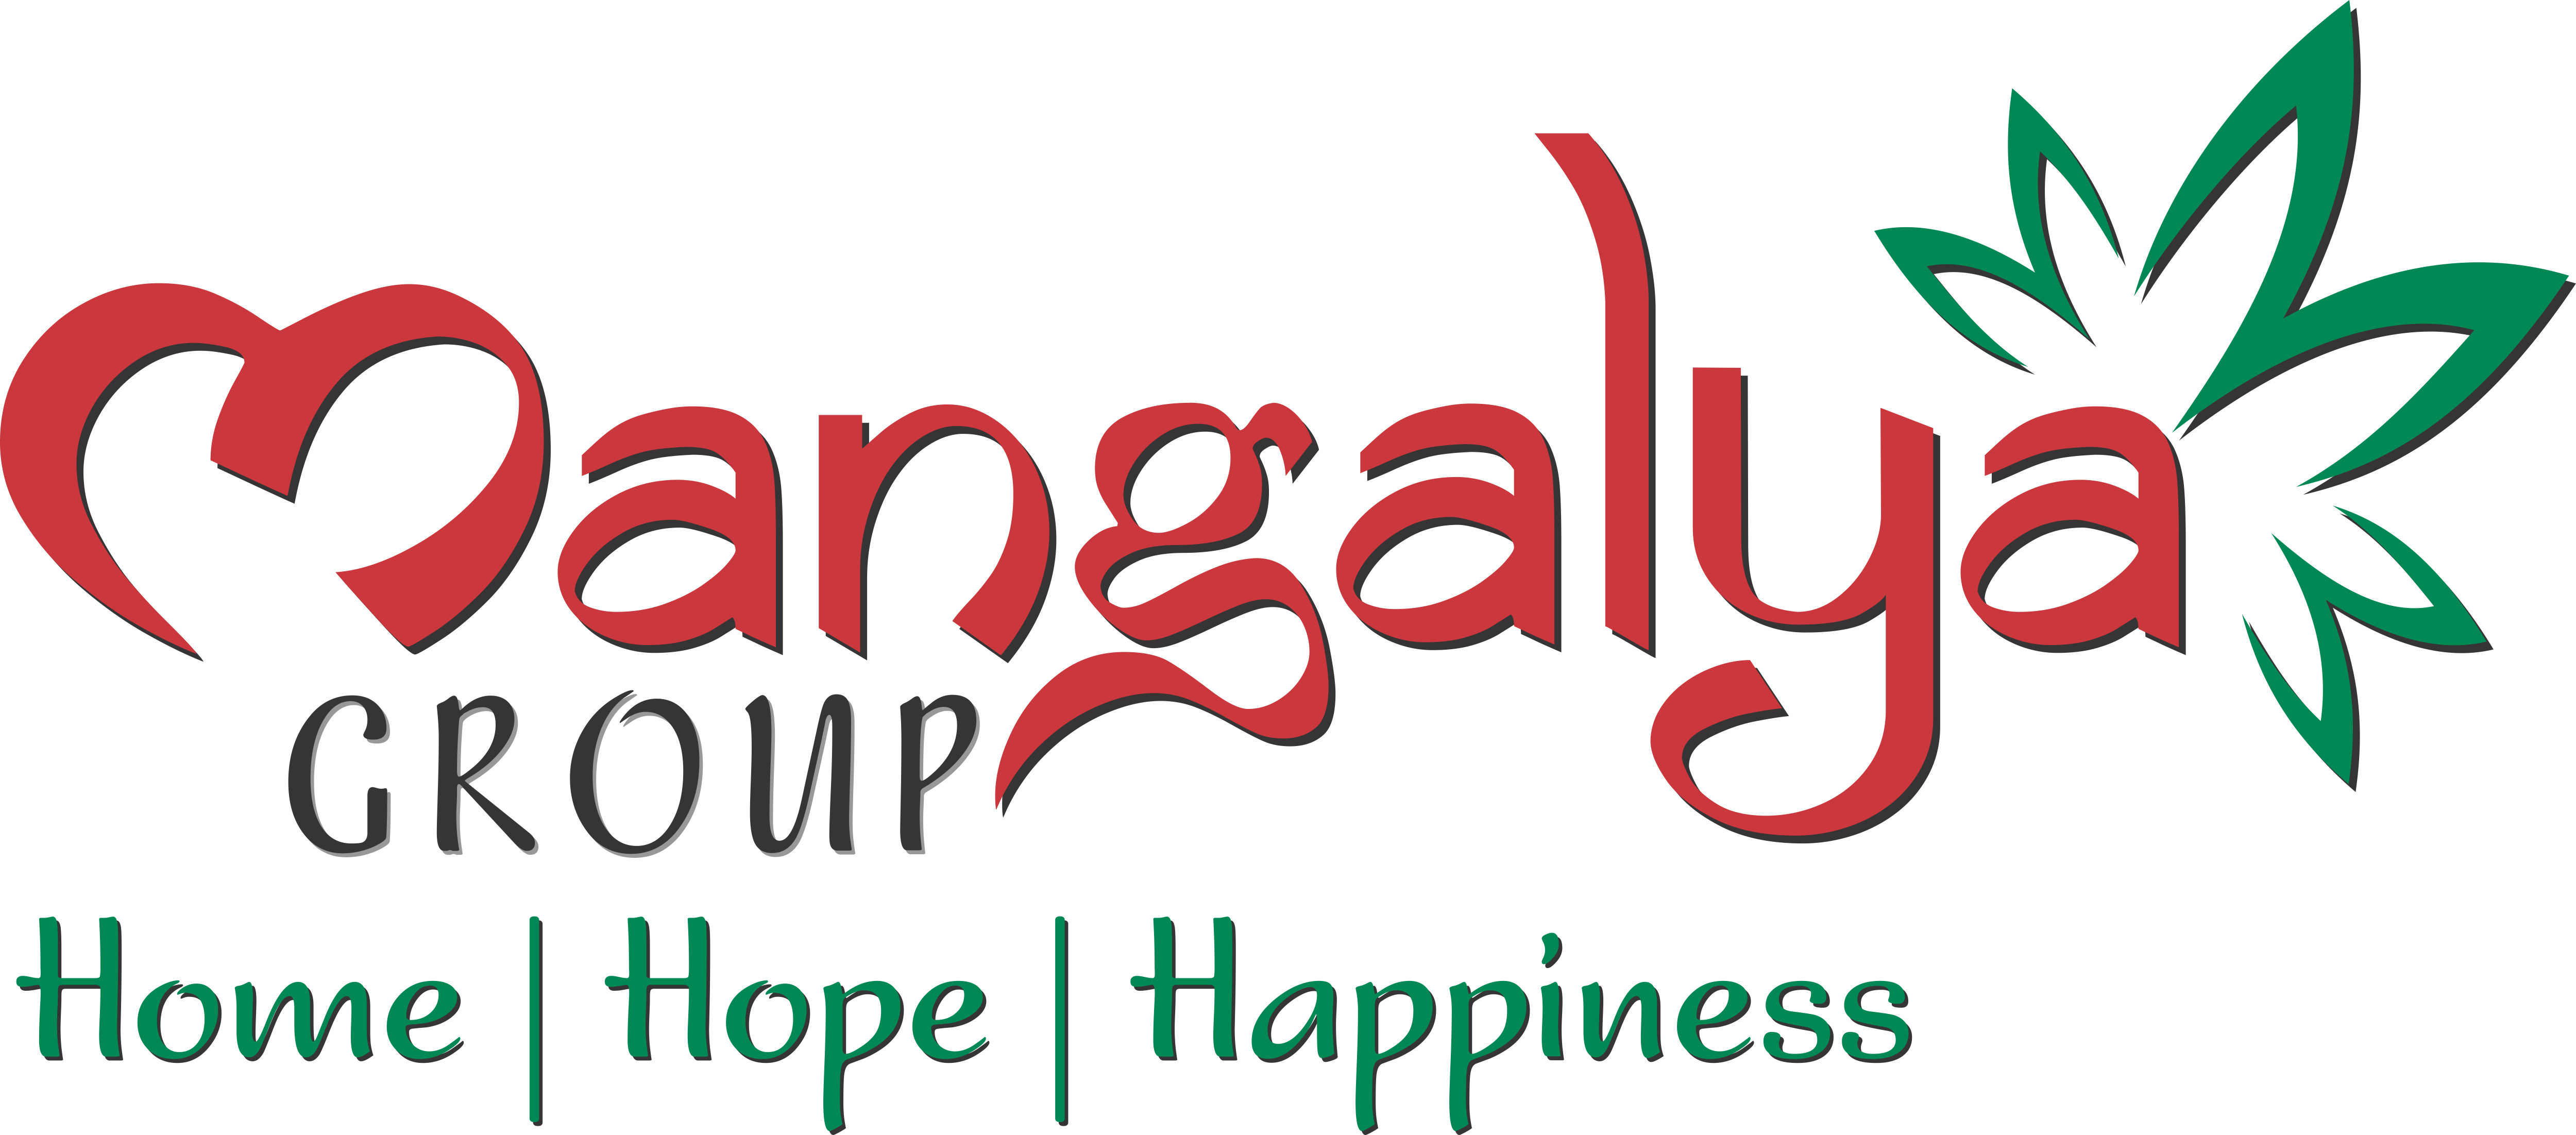 mangalya logo